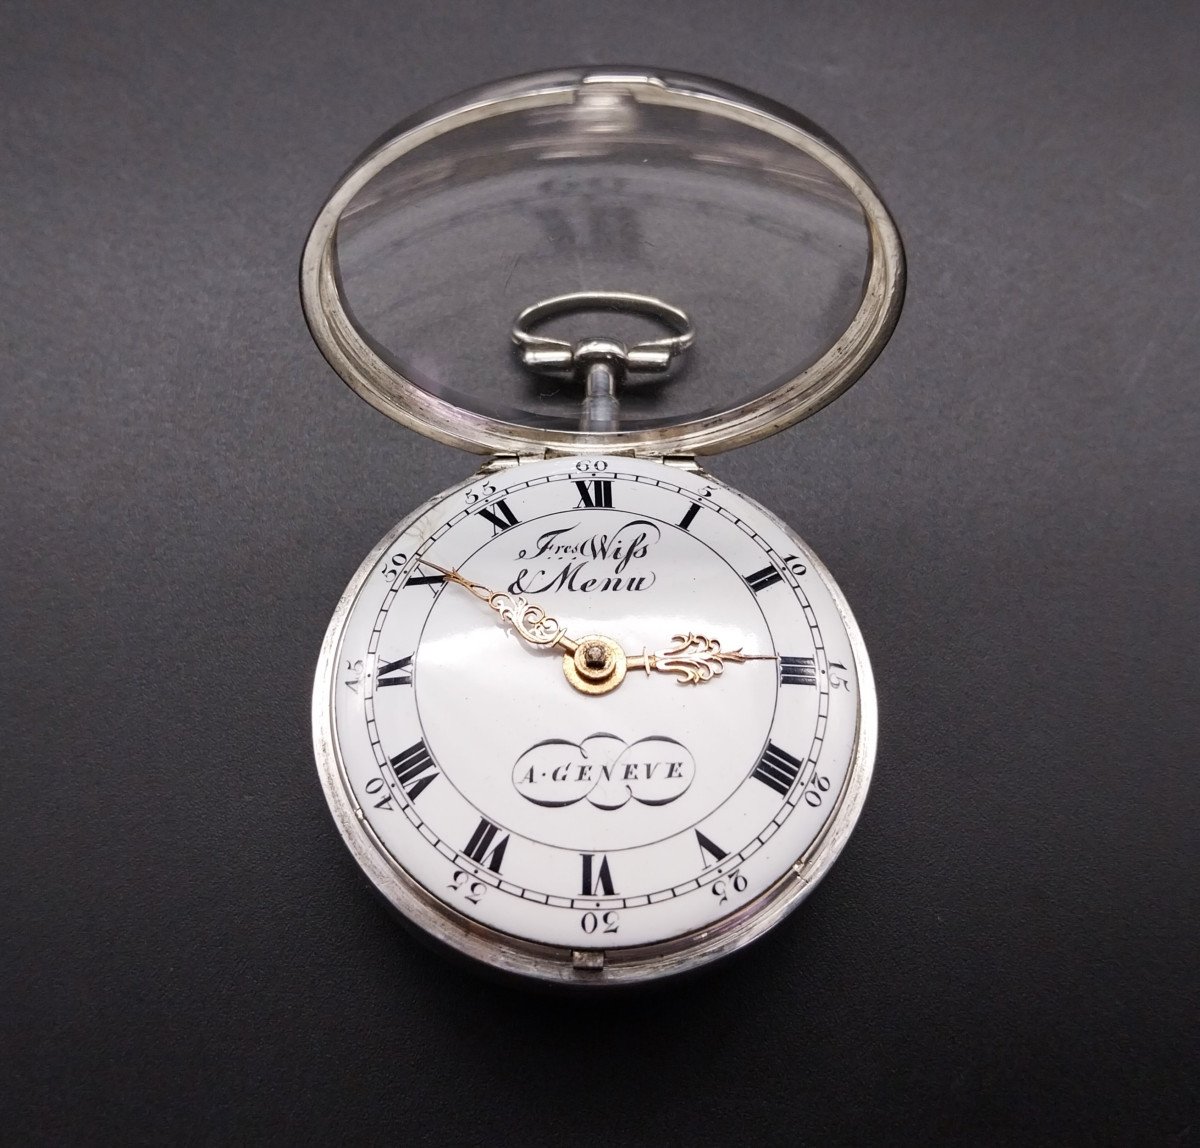 Orologio da tasca con scappamento a verga, firmato "Freres Wiss et Menu a Geneve", fine 700-photo-3